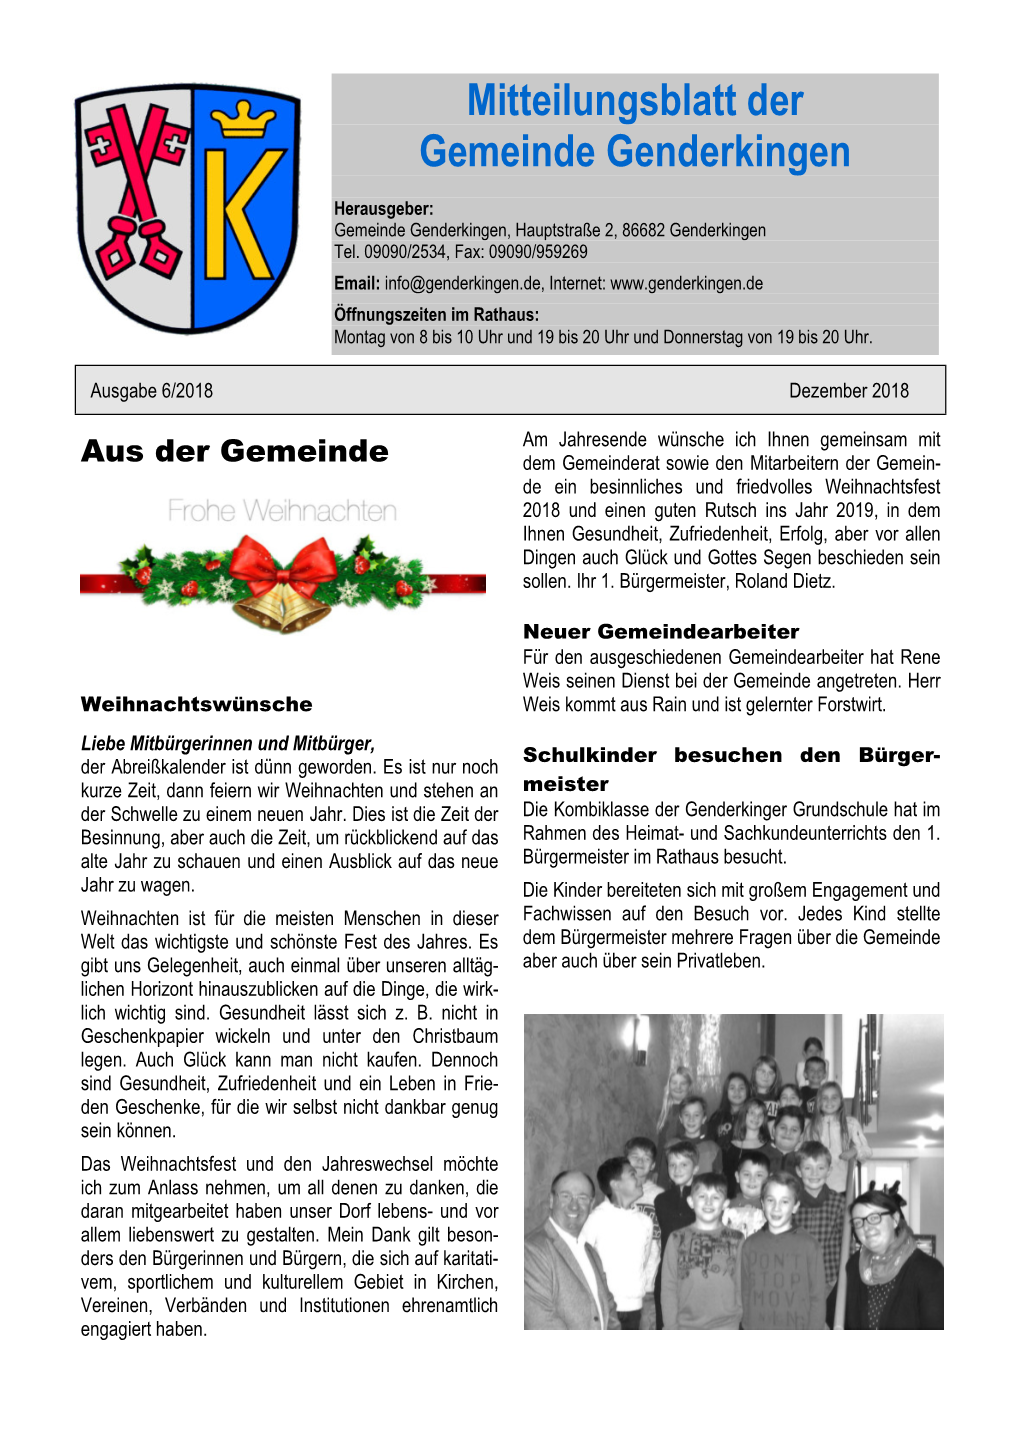 Mitteilungsblatt Der Gemeinde Genderkingen, Seite 2 Dezember 2018